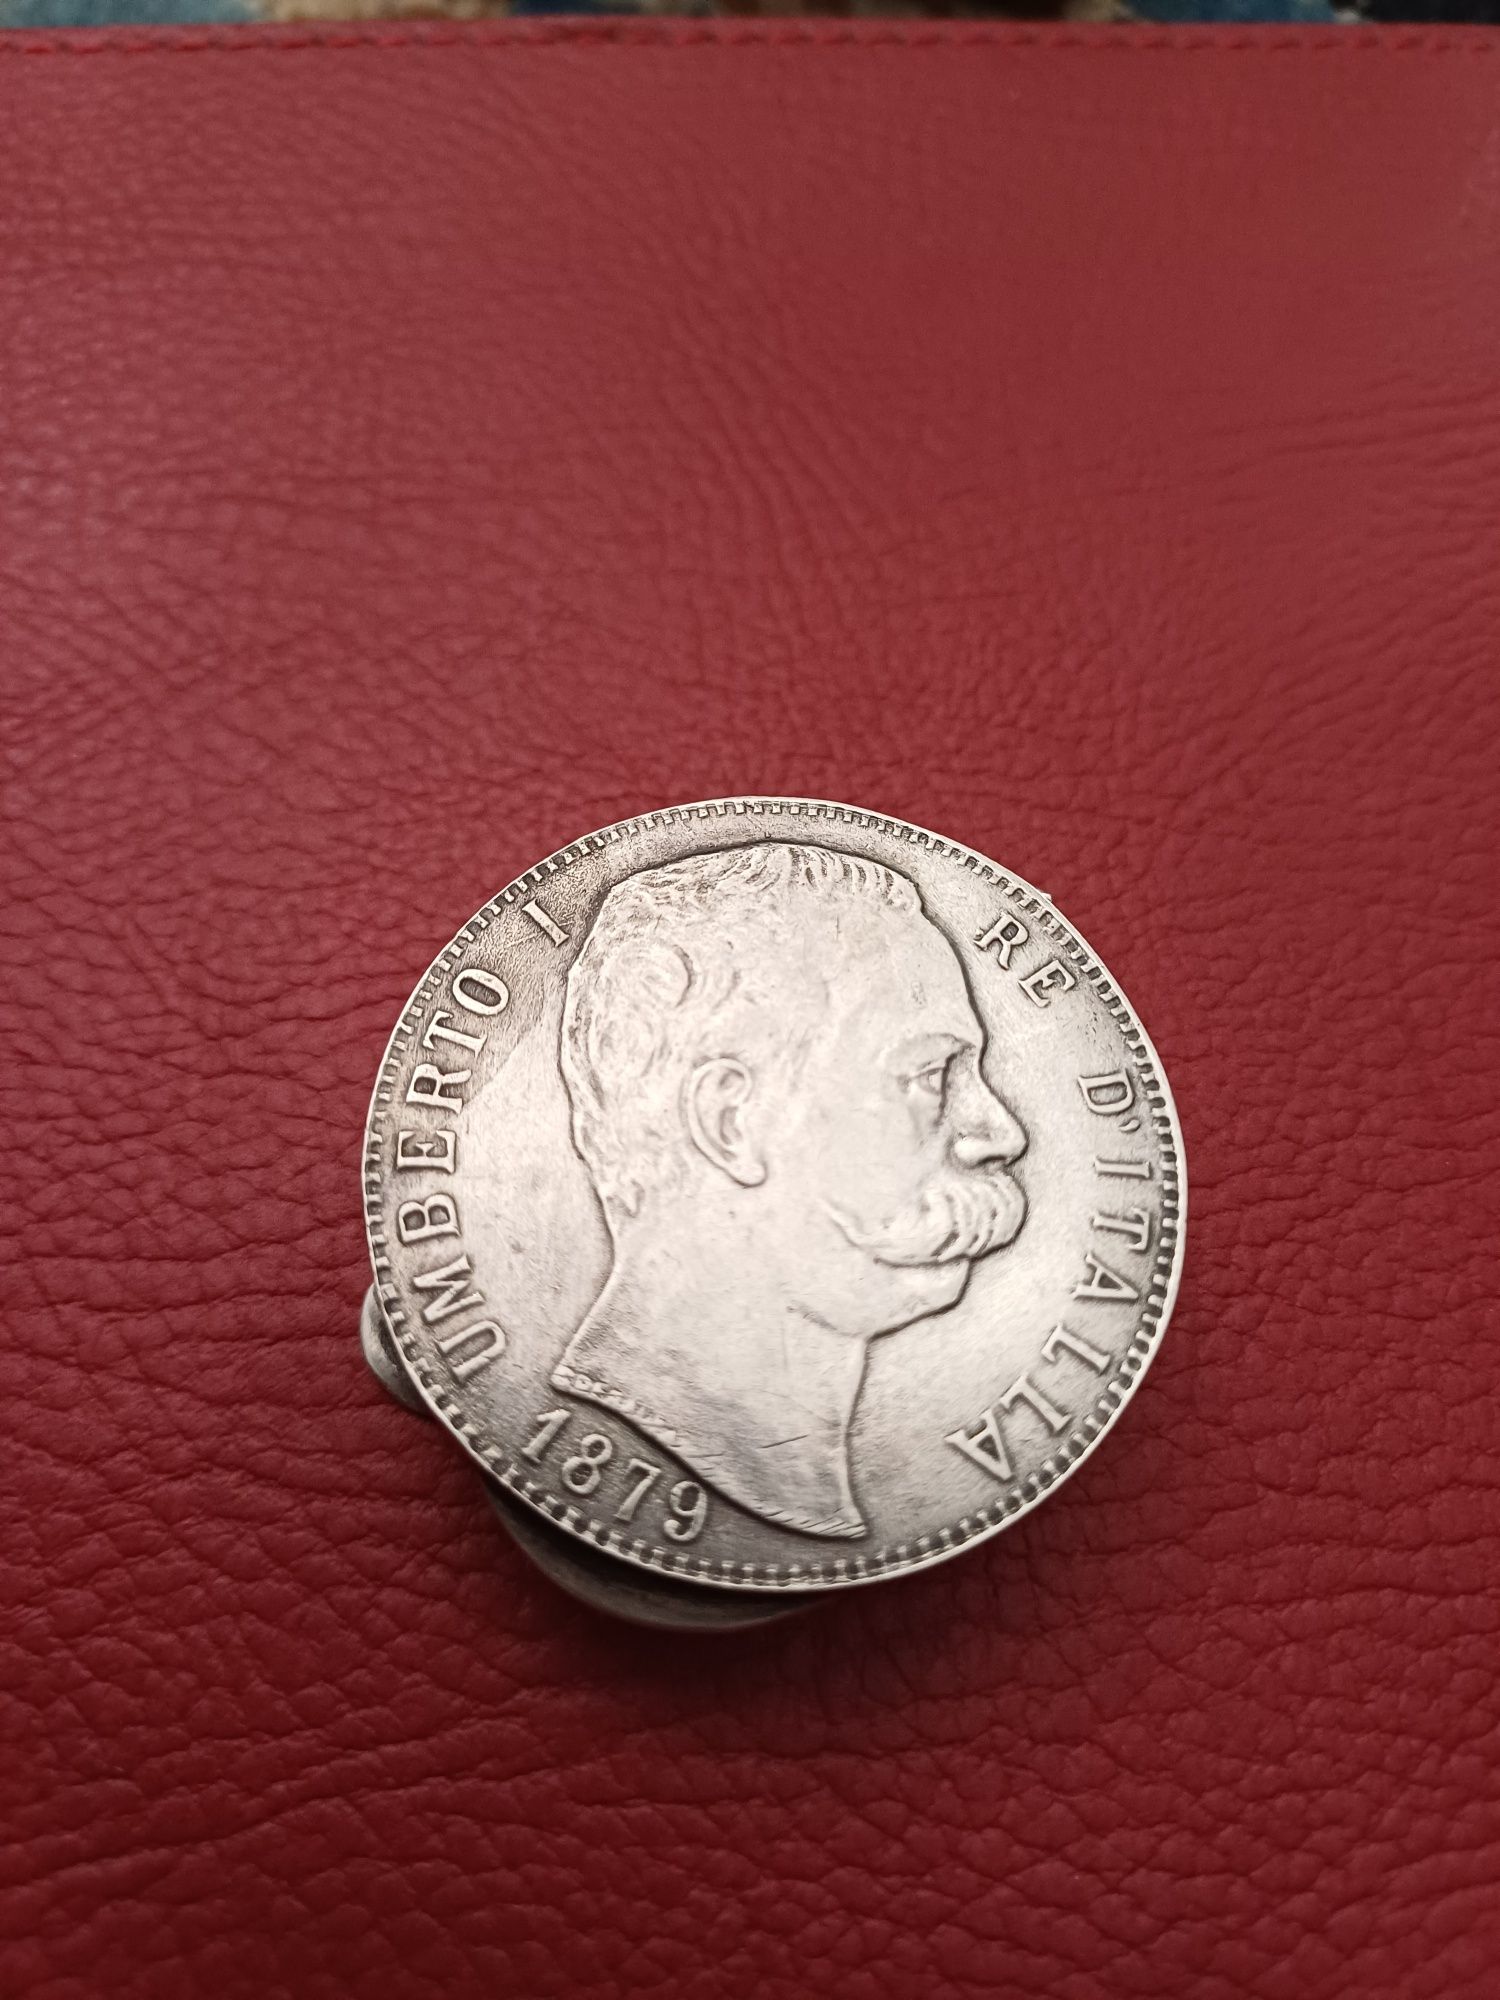 Cutie argint din monede vechi